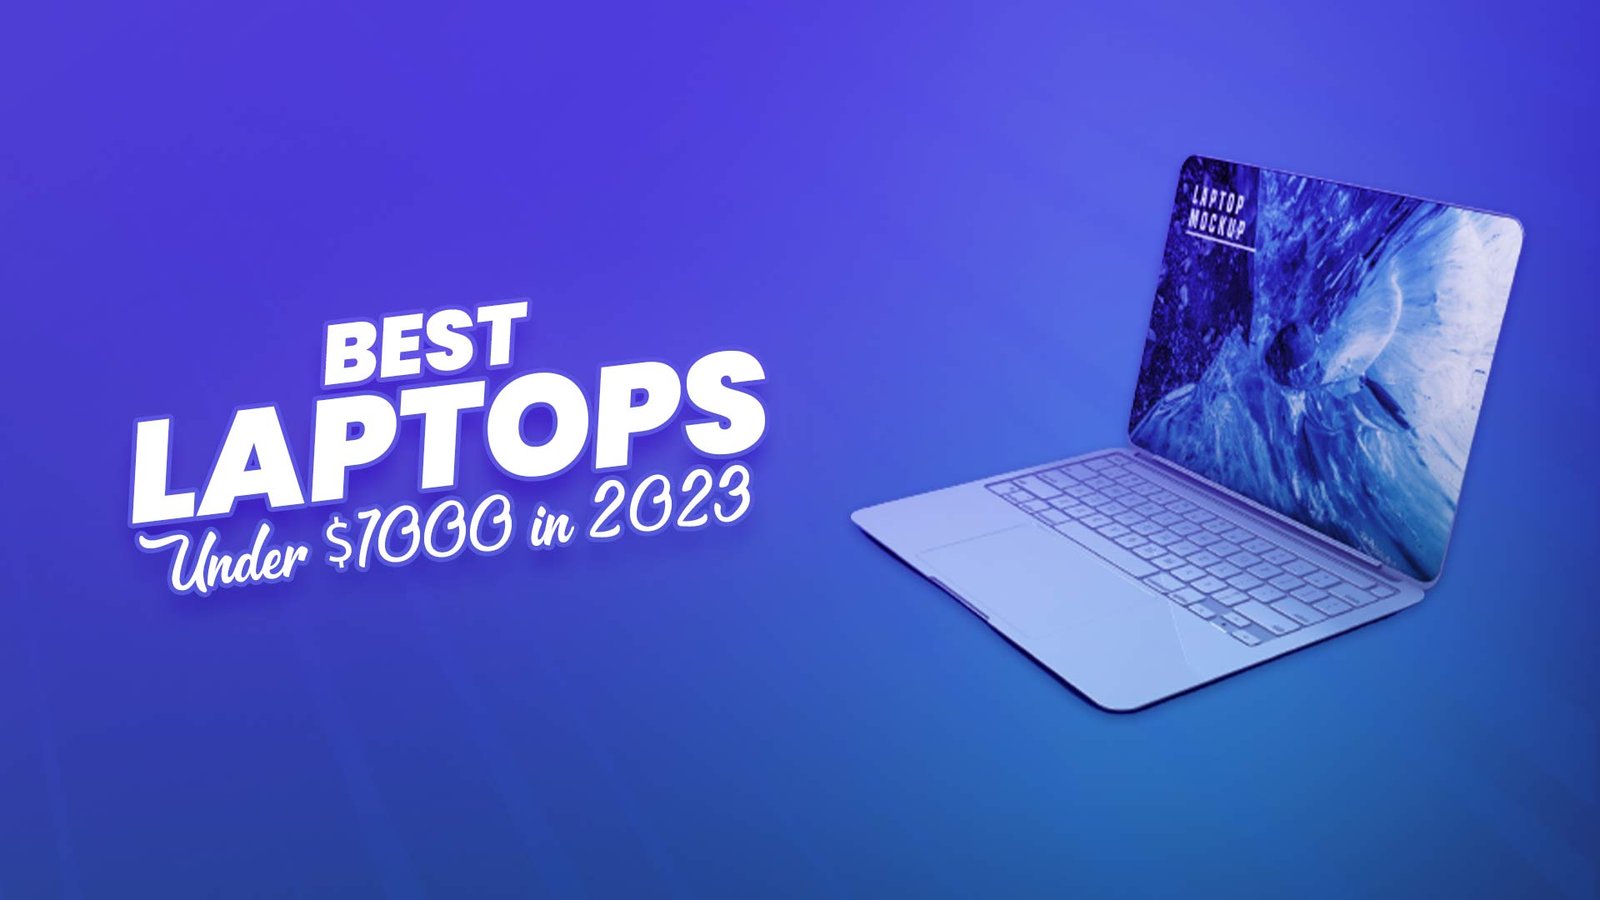 Laptops Under $1000